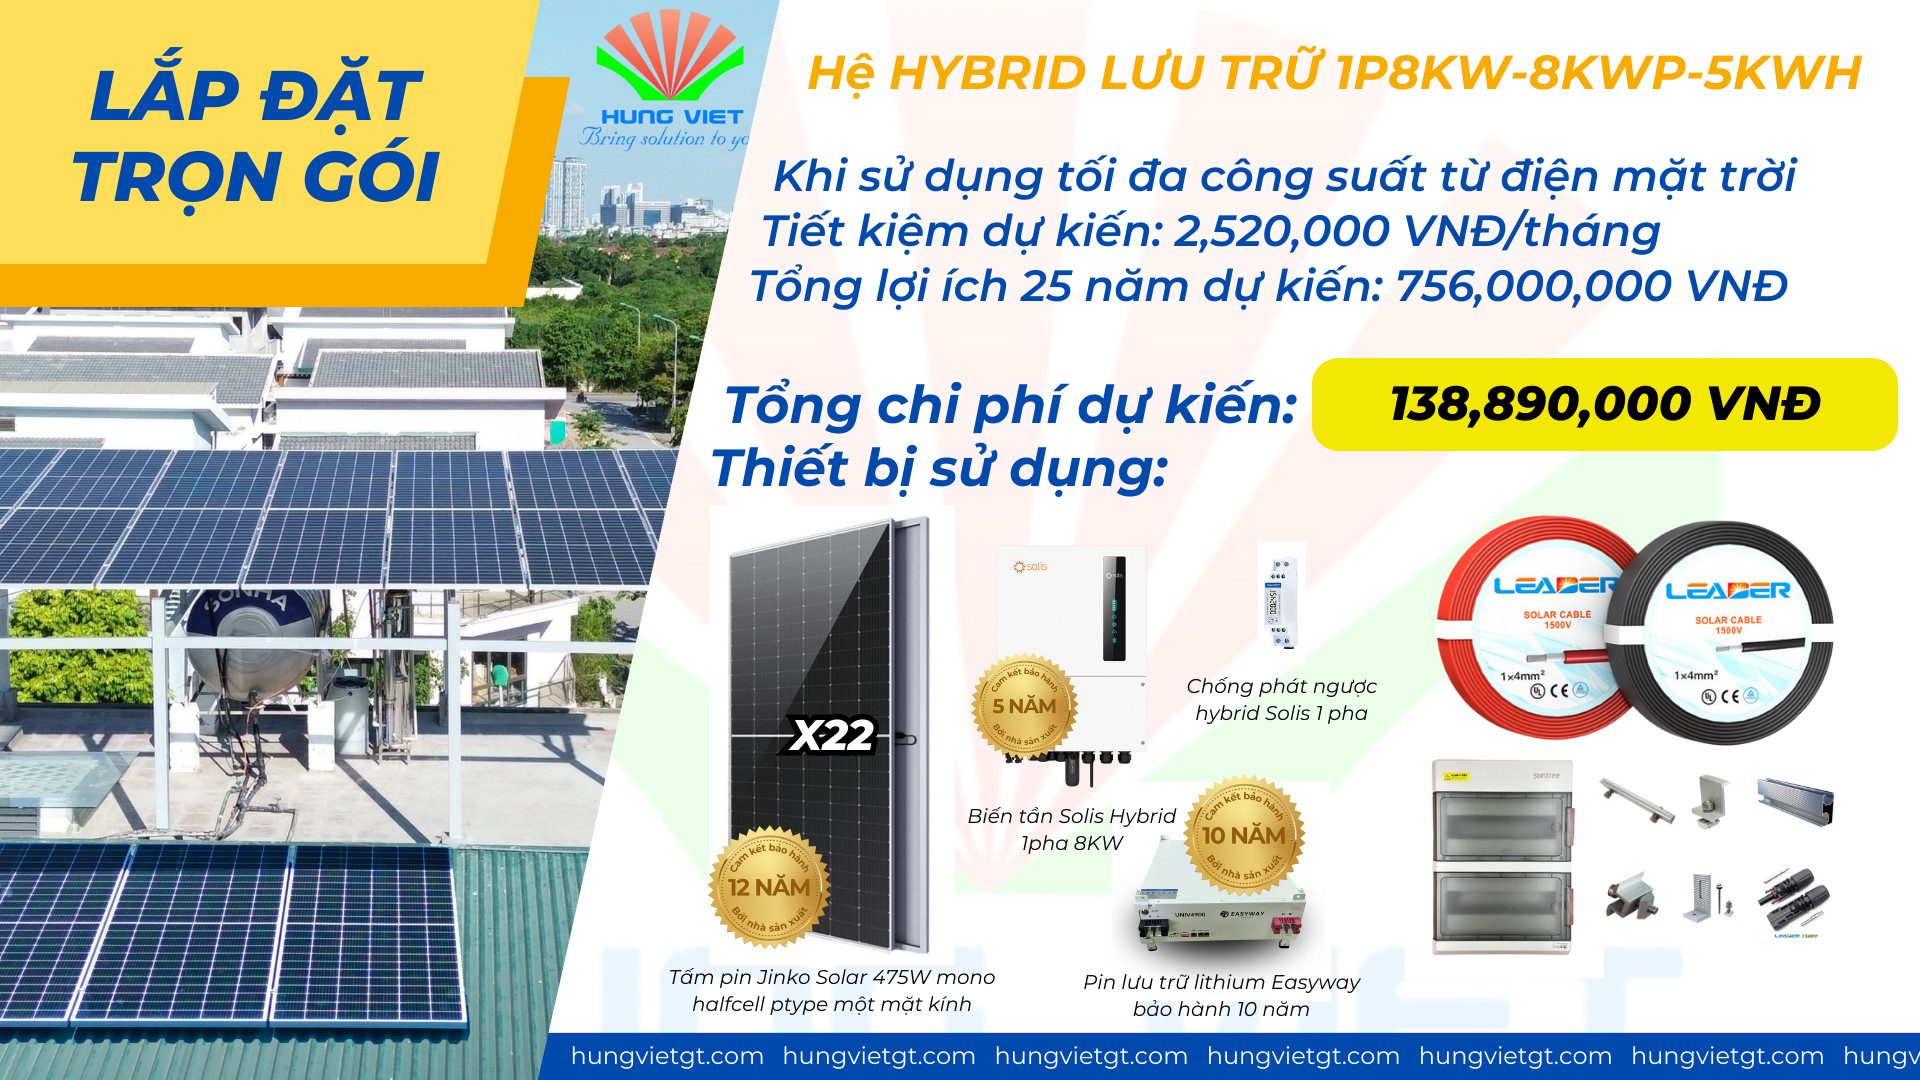 Combo lắp đặt trọn gói điện mặt trời hybrid 1P 8Kw lưu trữ 5kwh